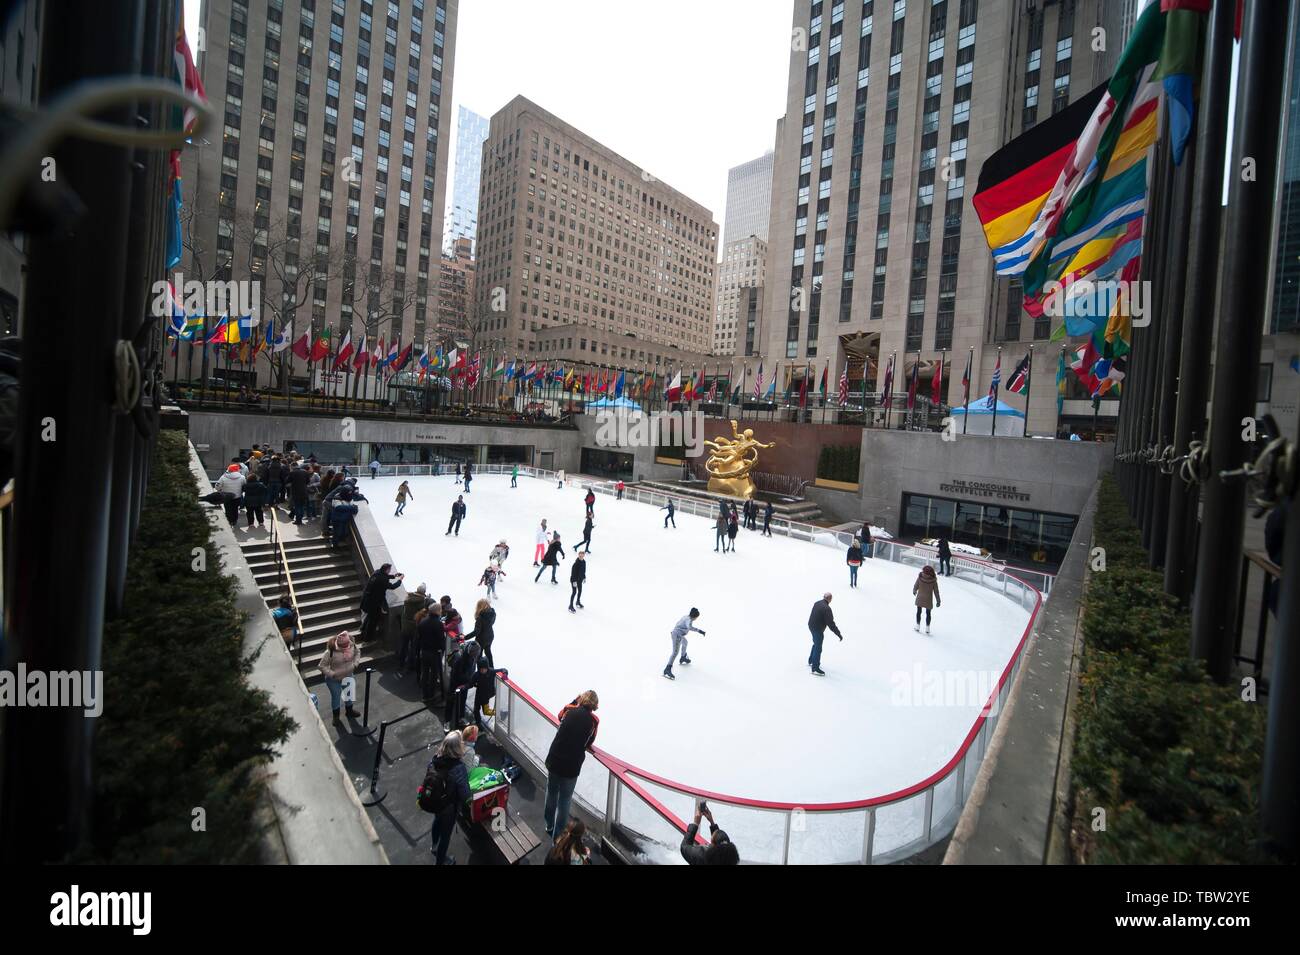 Pista de patinaje sobre hielo en el Rockefeller Center de Nueva York. Stock Photo